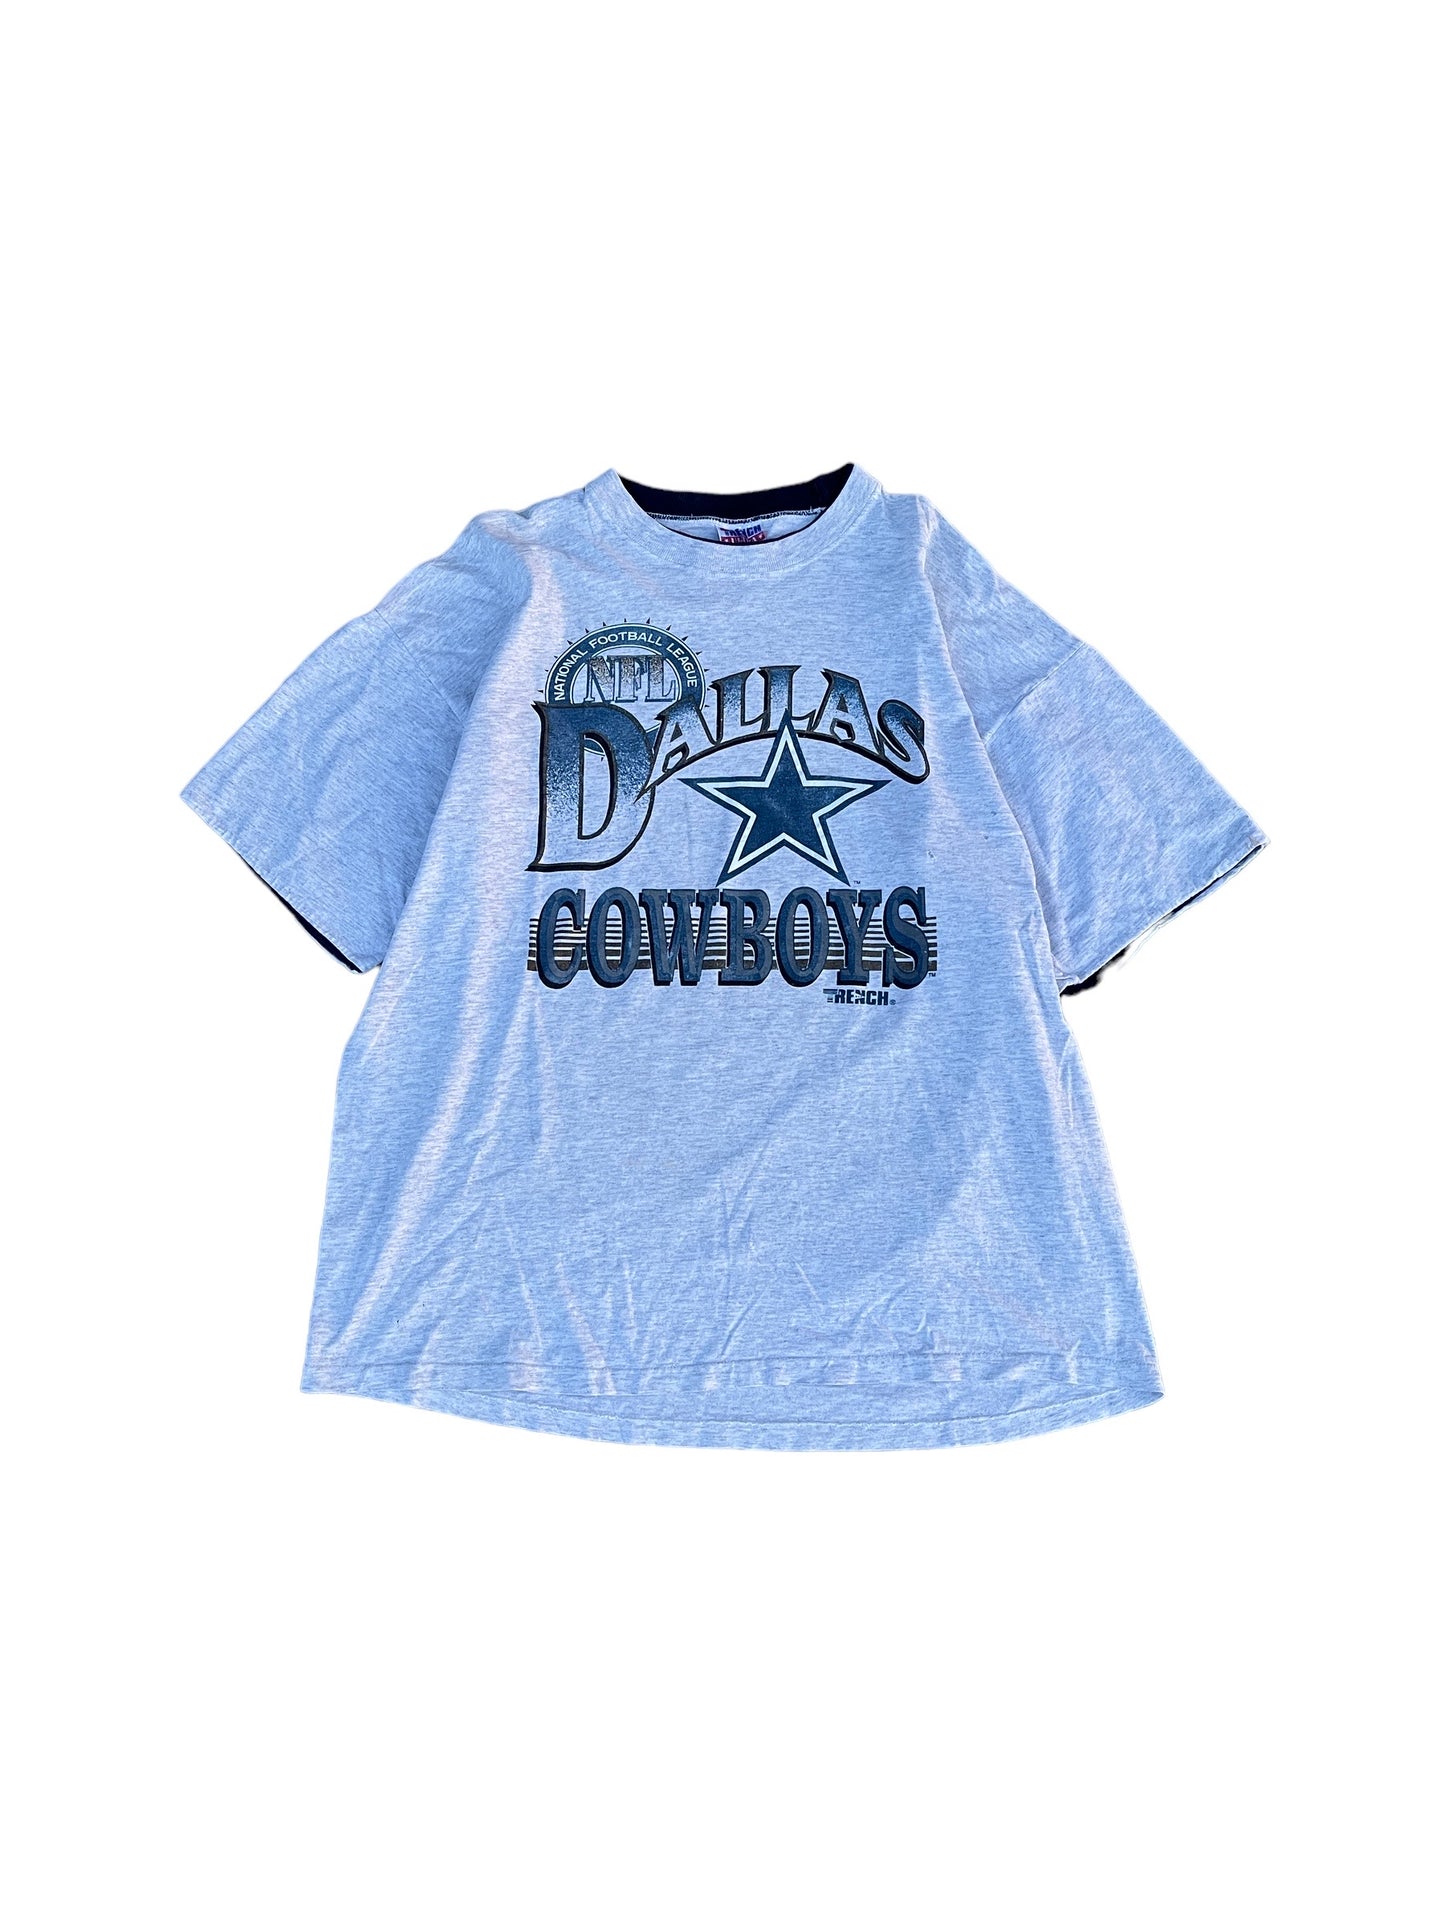 Vintage 90's NFL Dallas Cowboys Tee